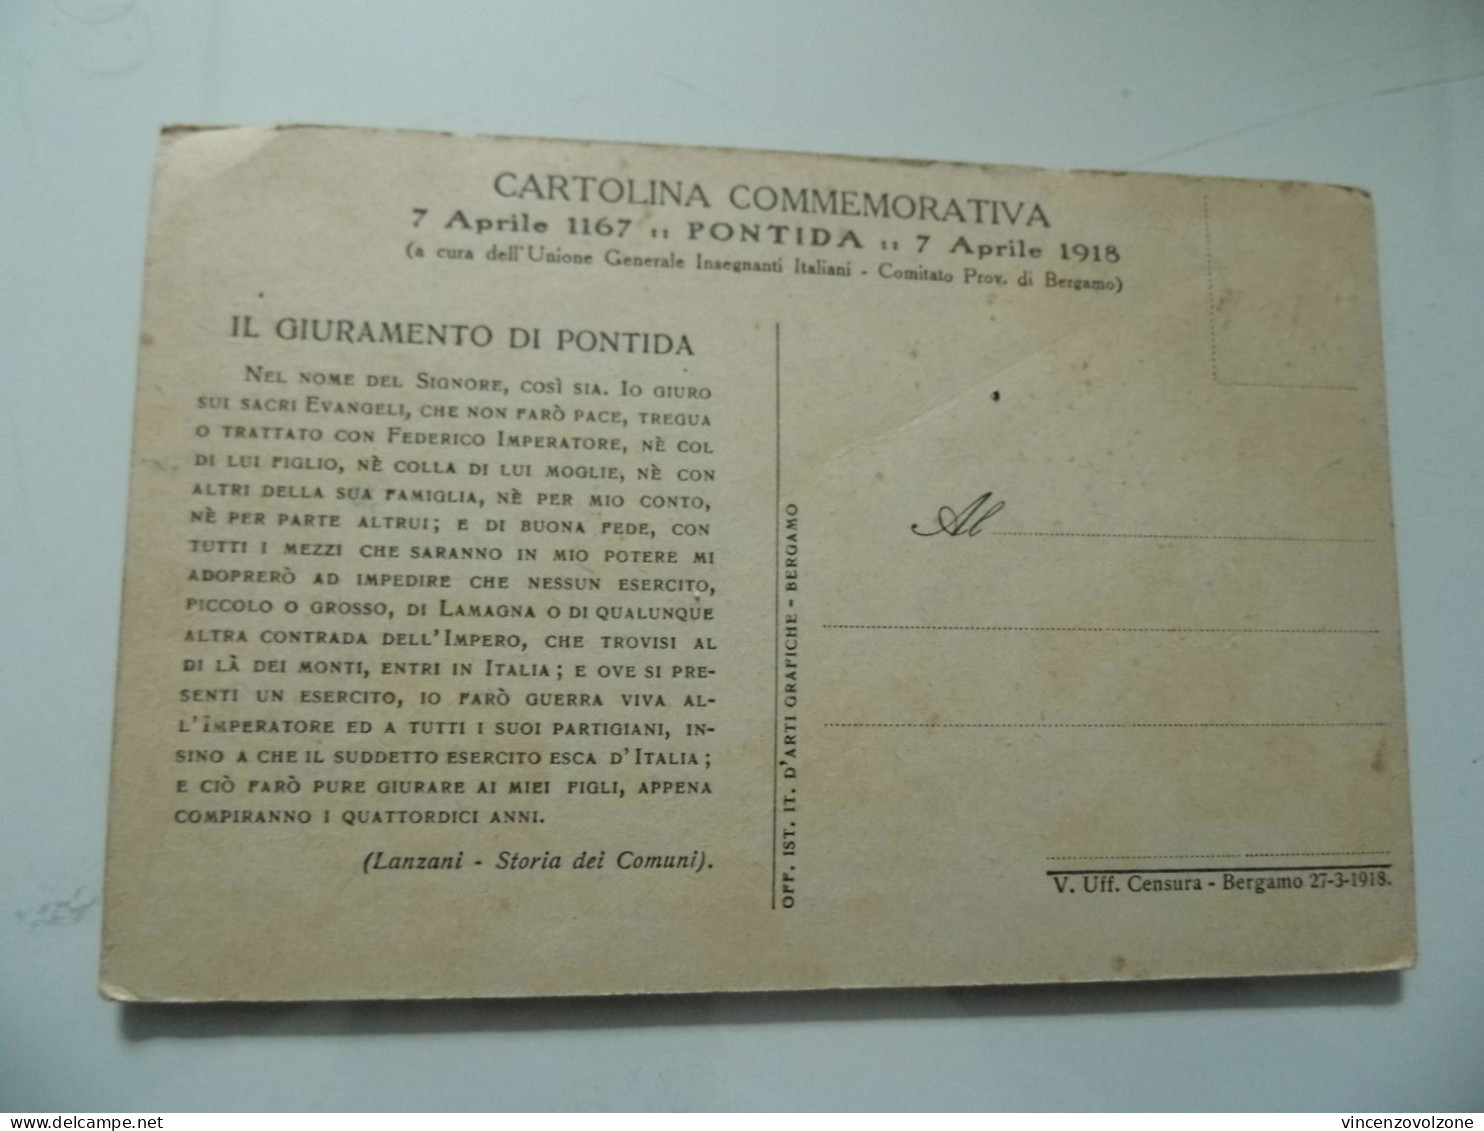 Cartolina "CARTOLINA COMMEMORATIVA GIURAMENTO DI PONTIDA" 1918 - Manifestazioni